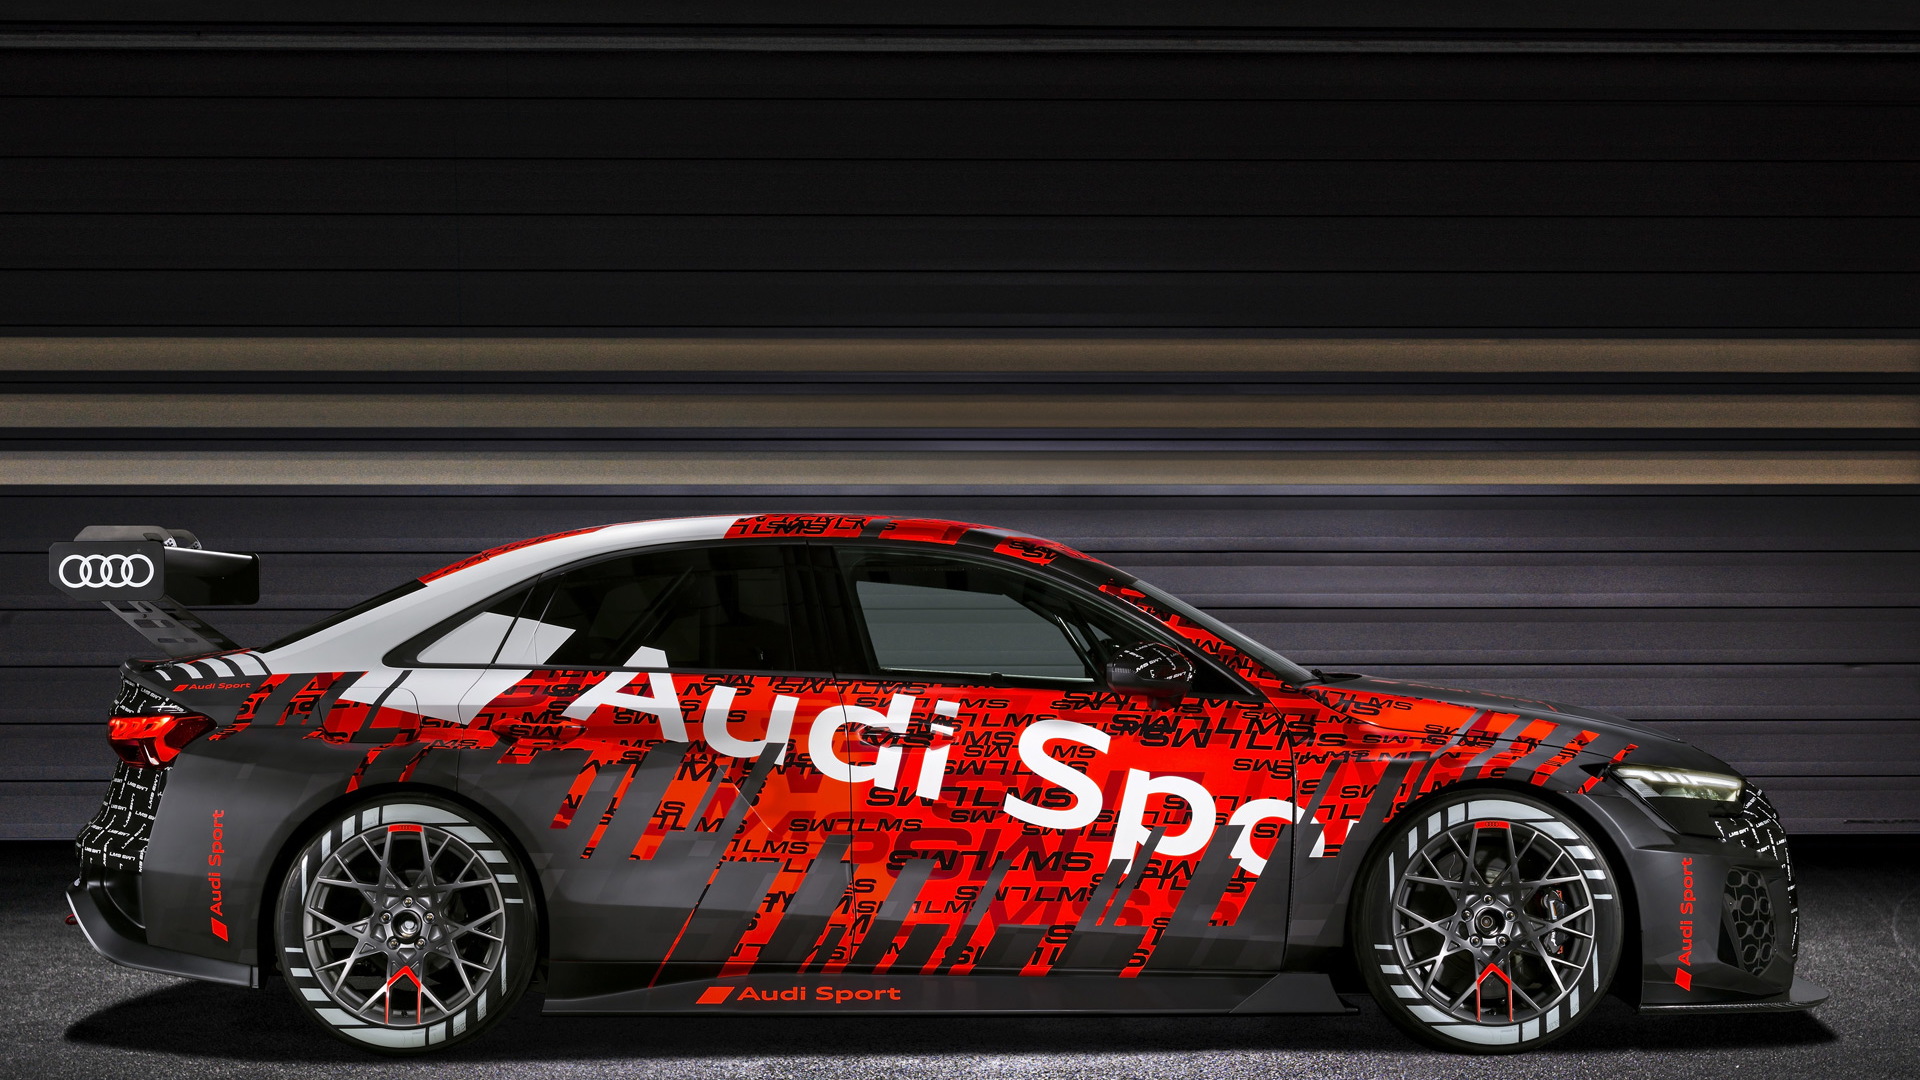 2021 Audi RS 3 LMS race car